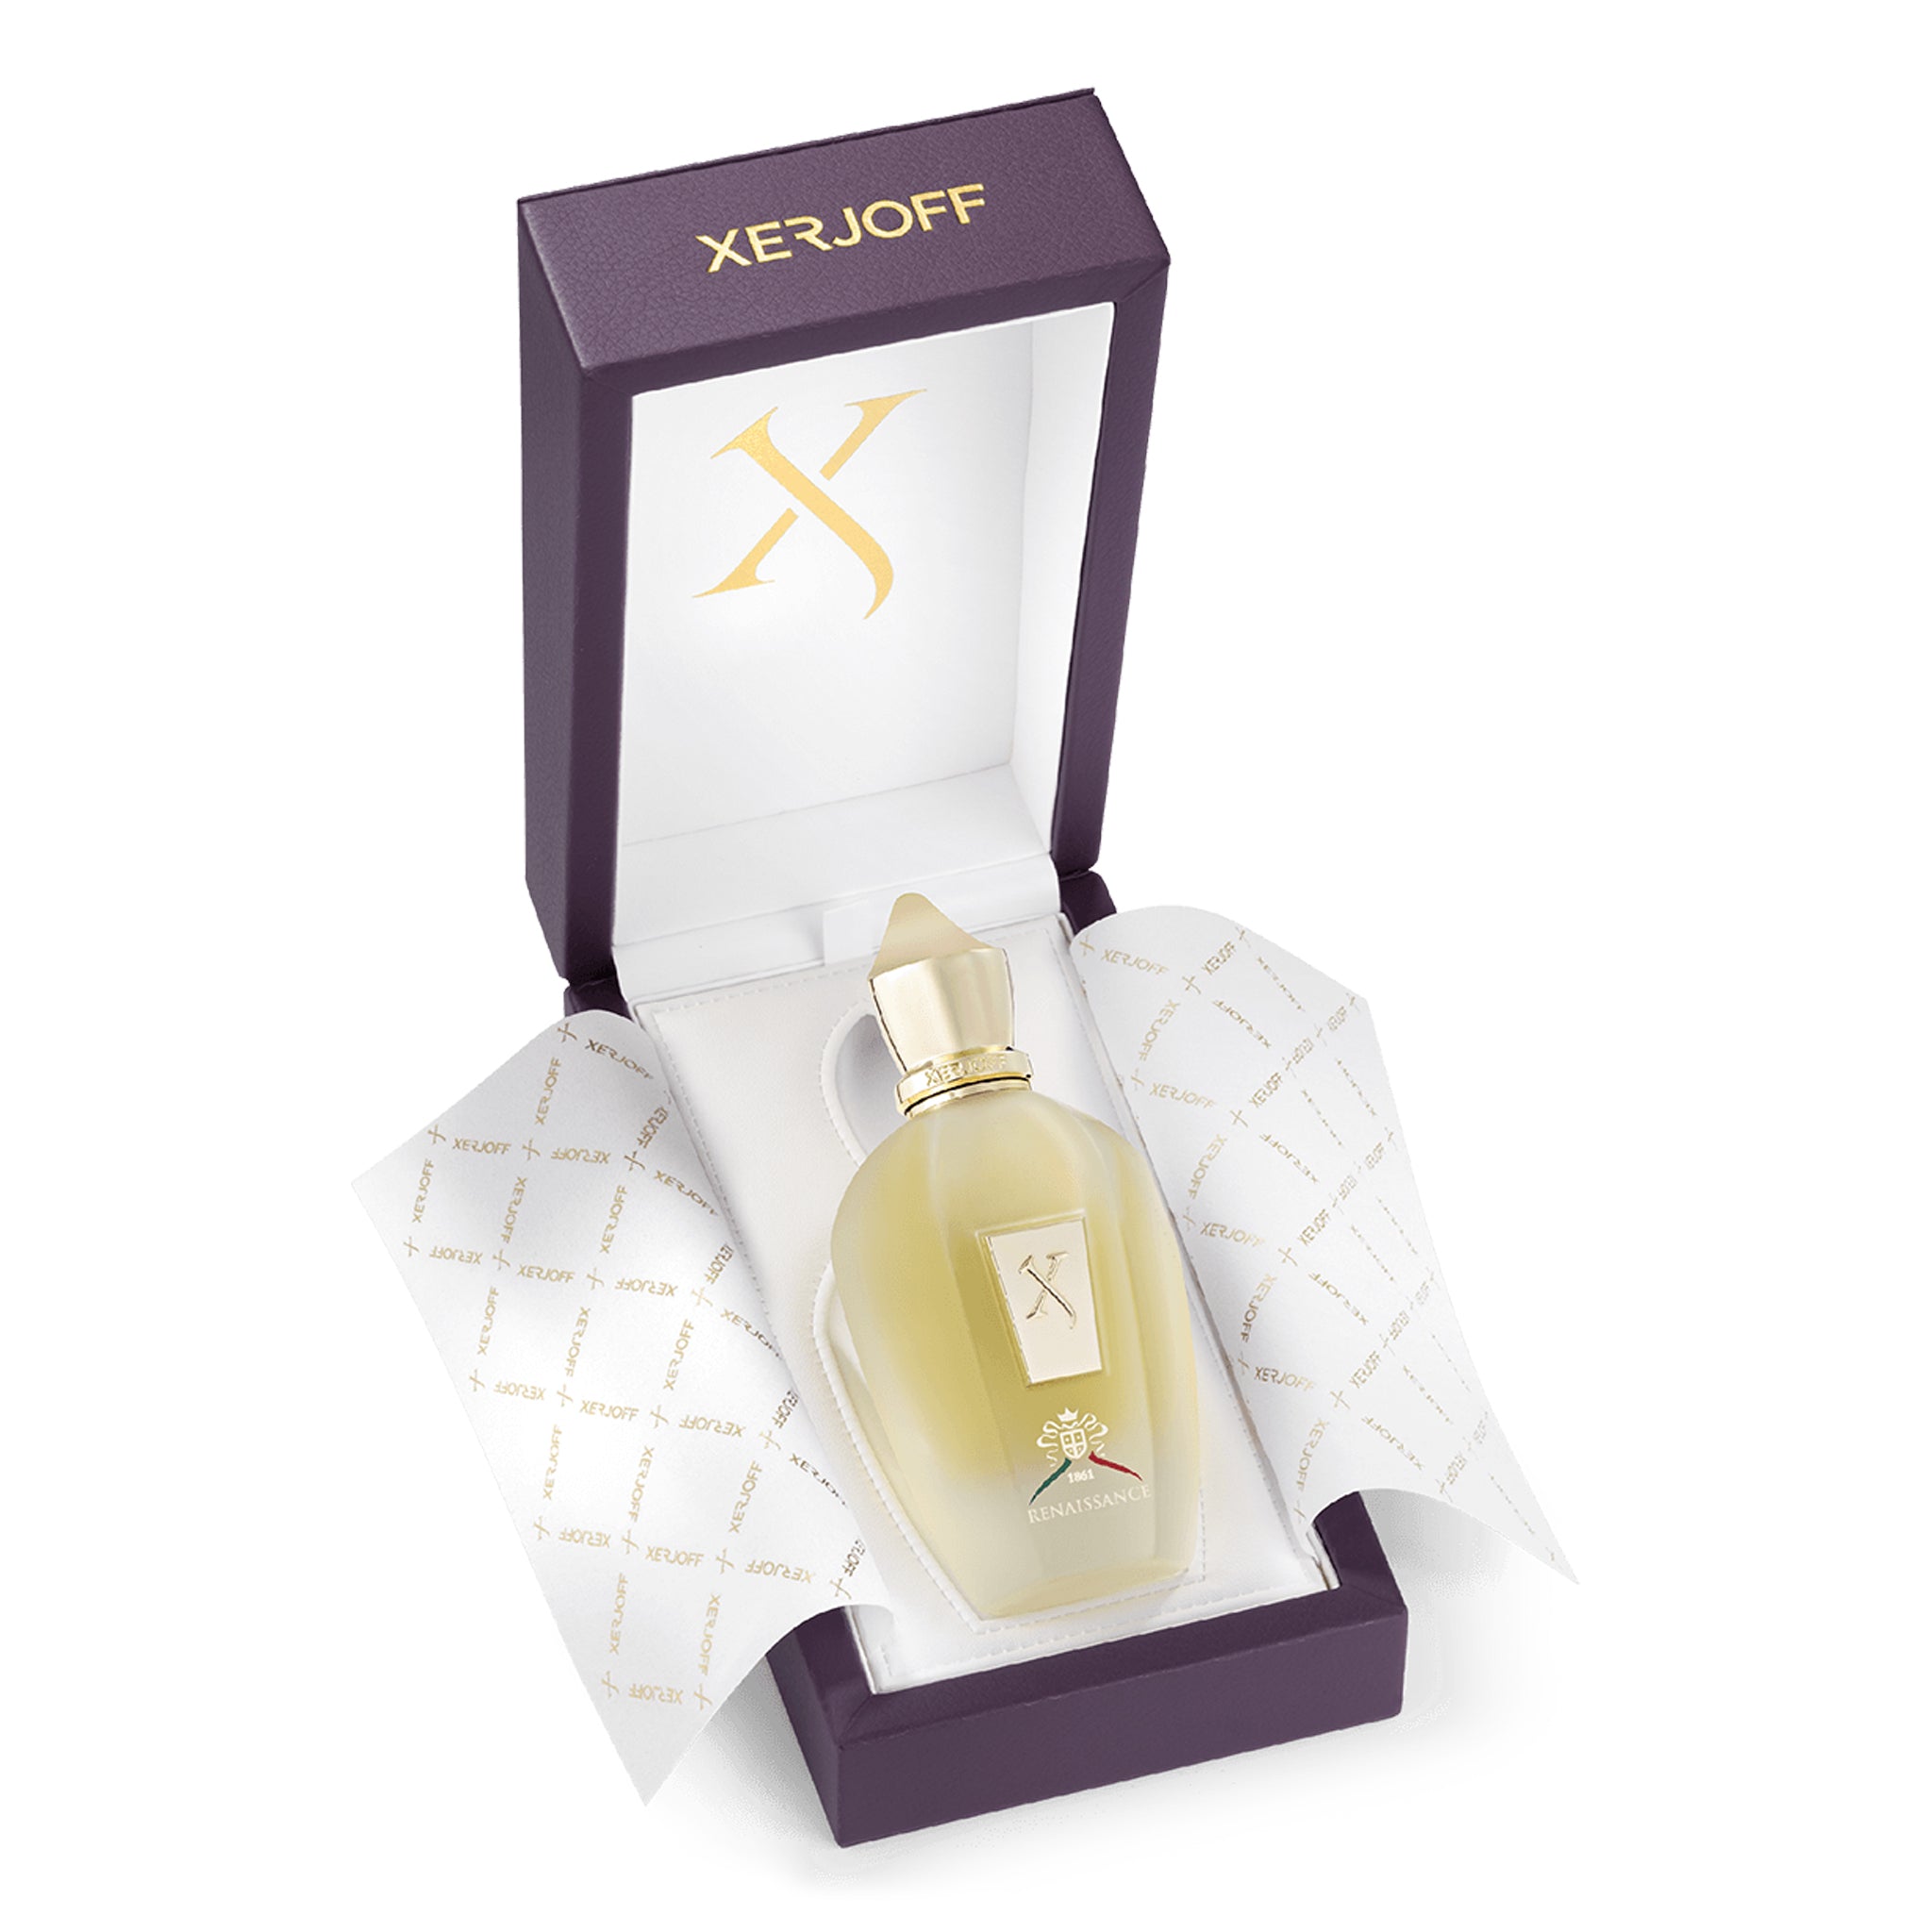 Packaging view of Xerjoff Renaissance Eau De Parfum 100ml